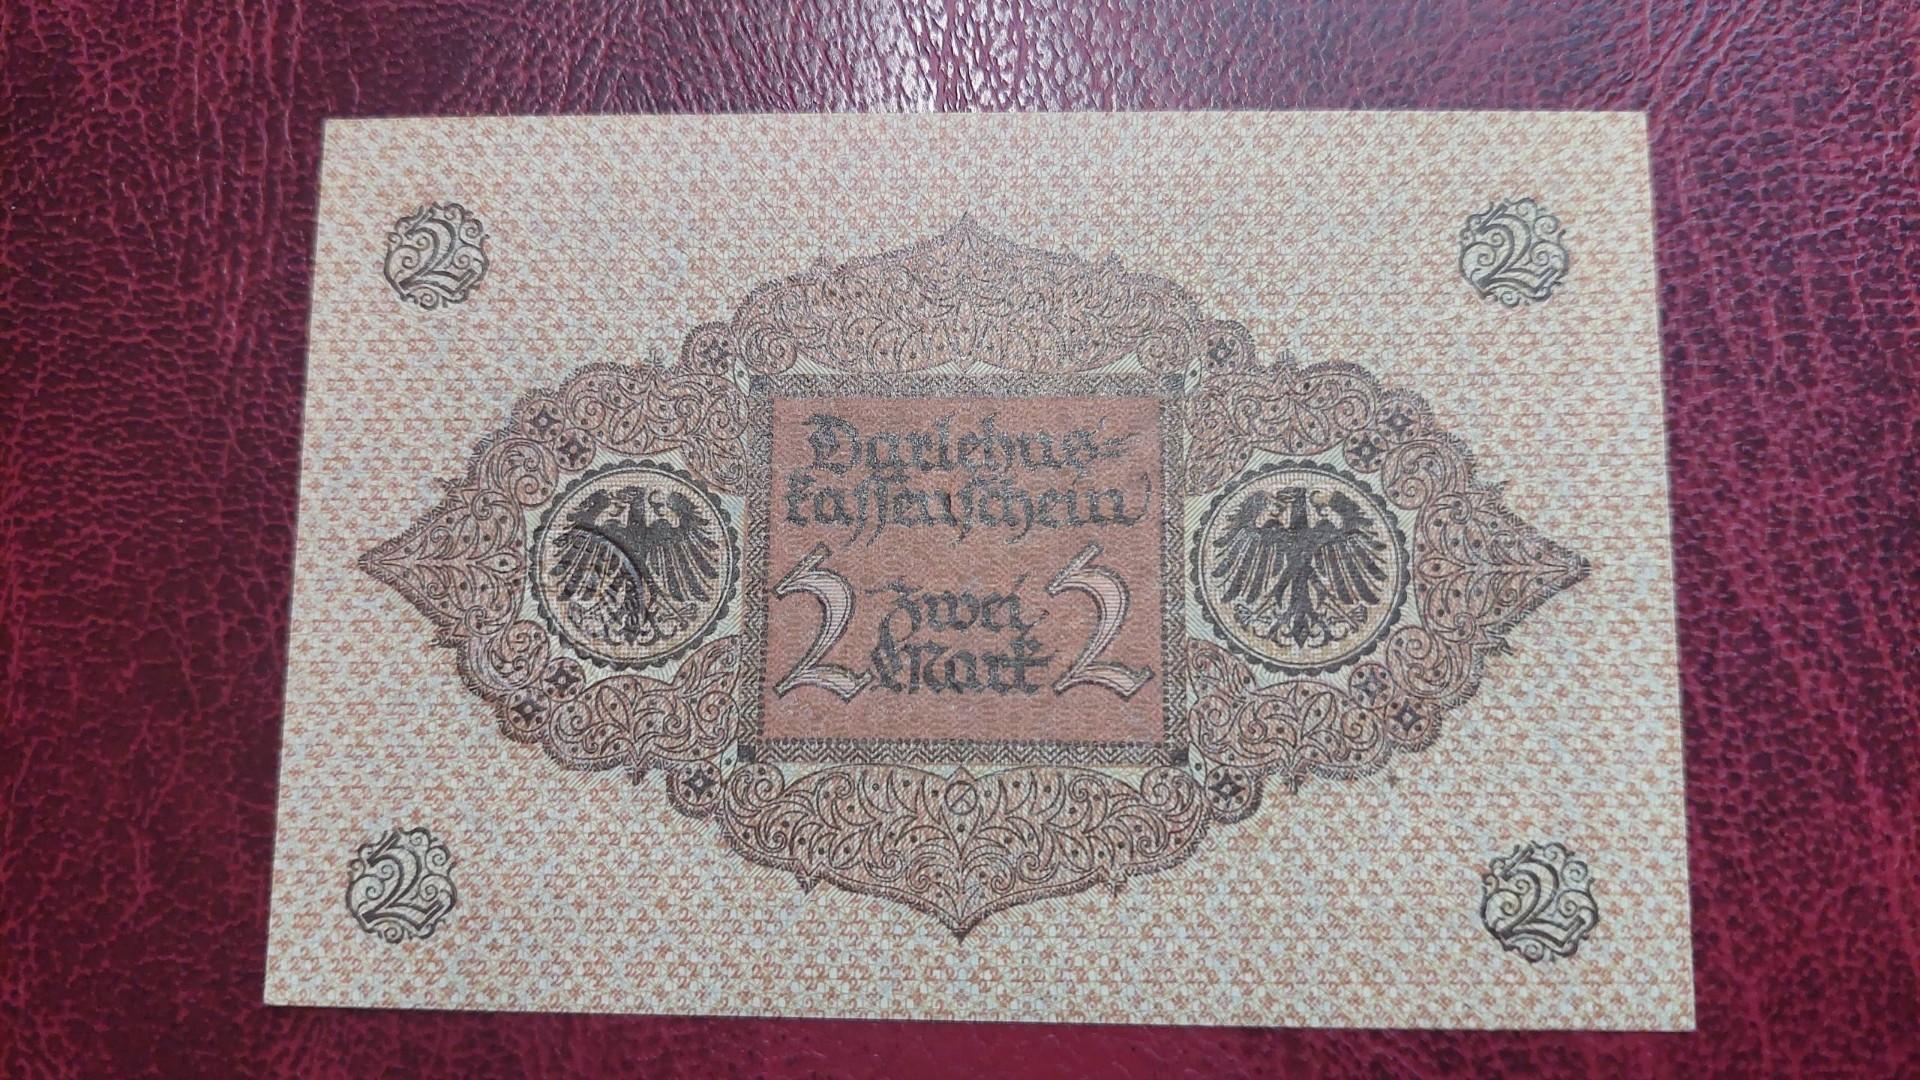 Darlehnskassenschein 2 Mark Germany 1920